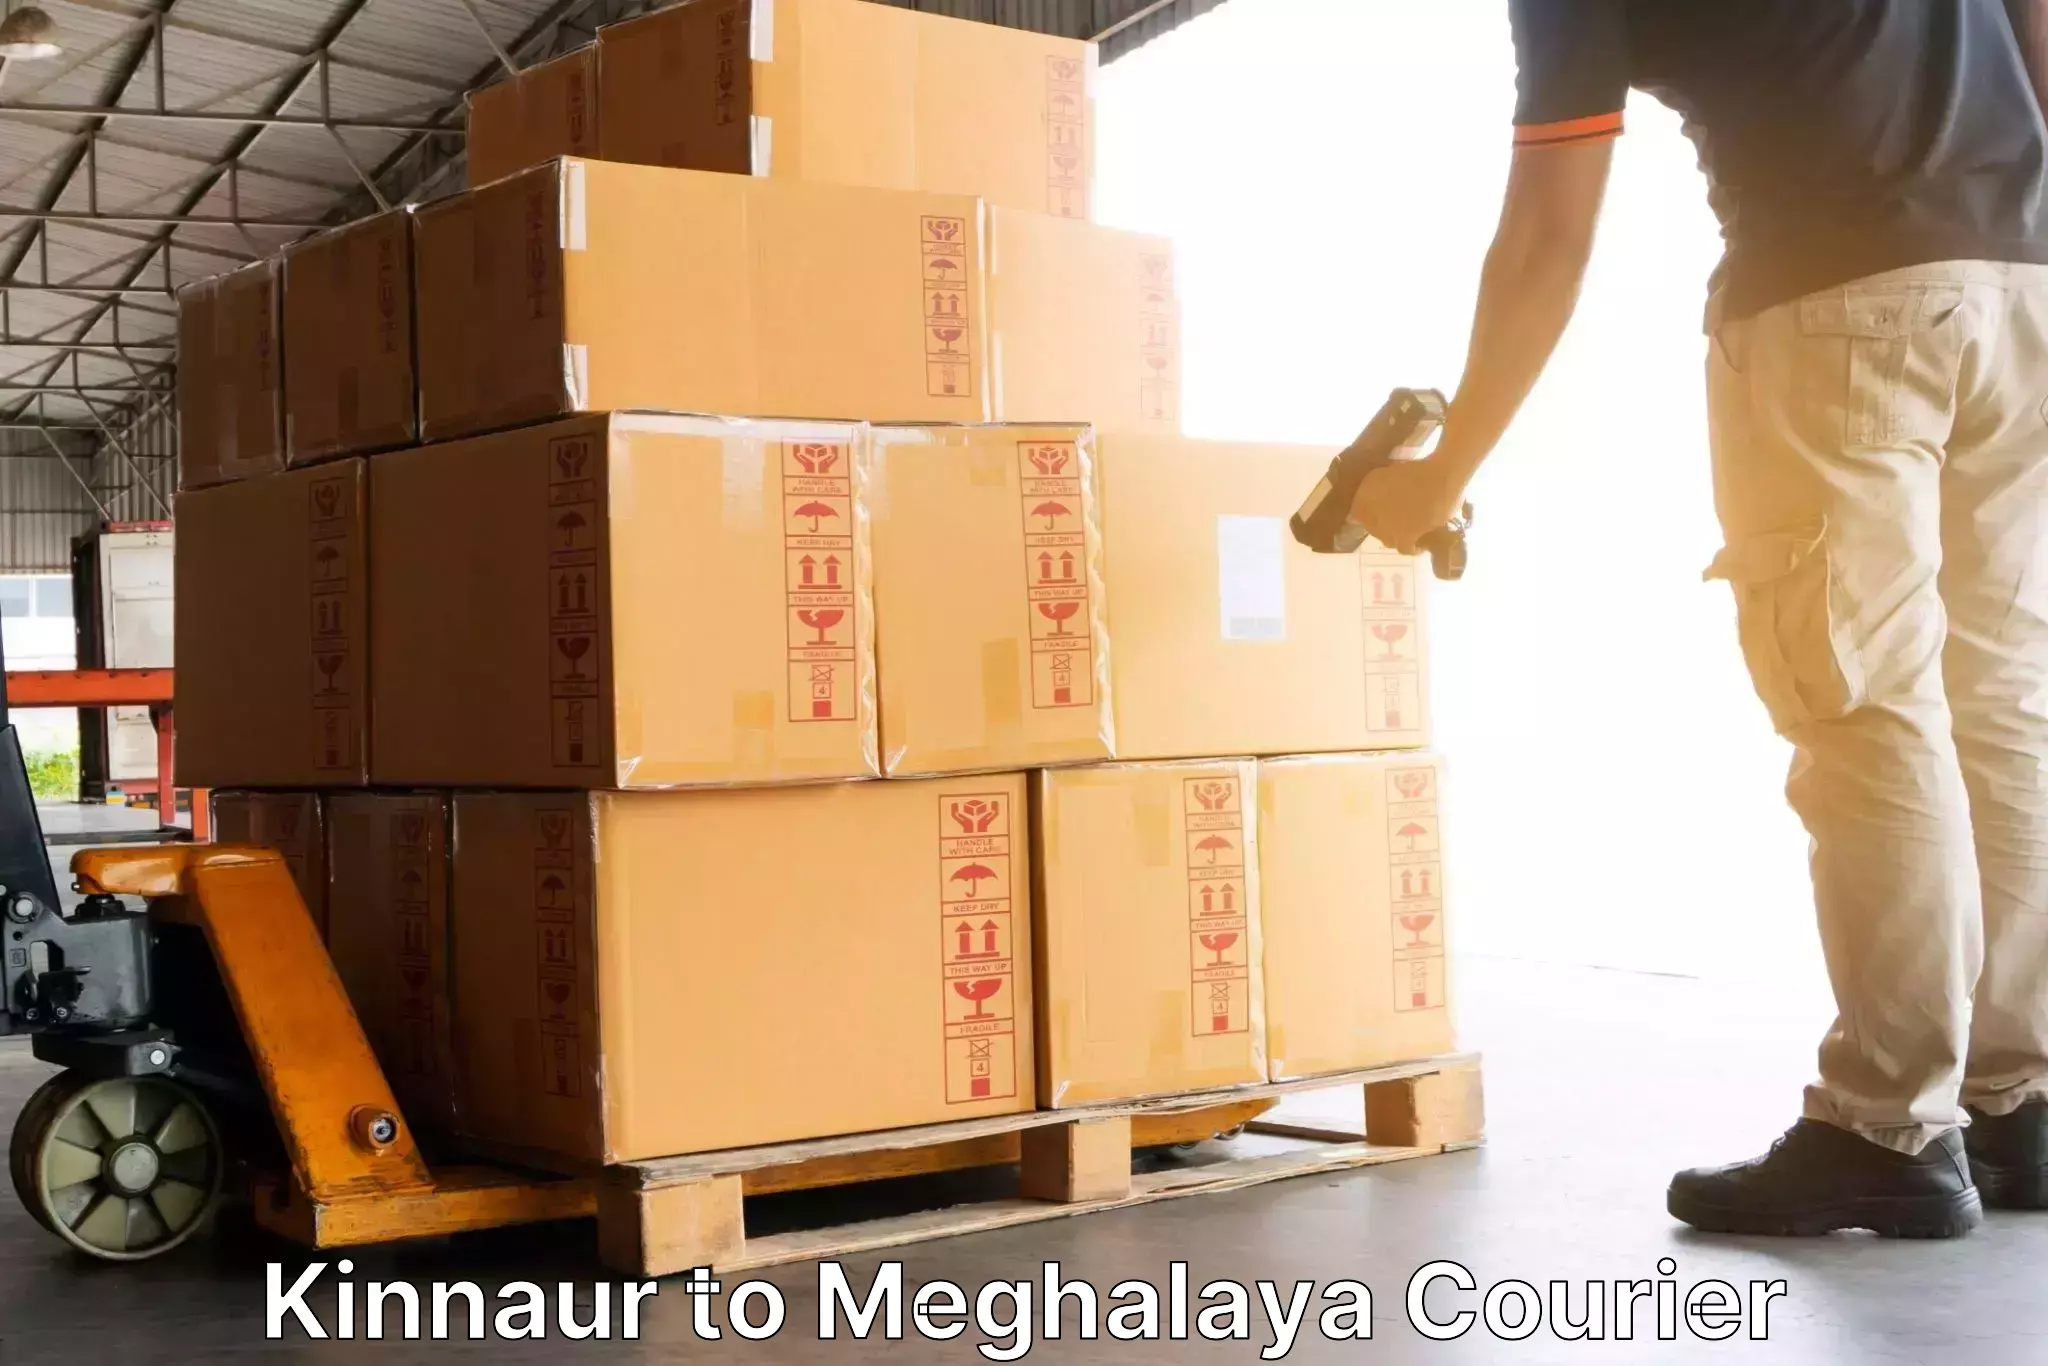 High-priority parcel service Kinnaur to Dkhiah West